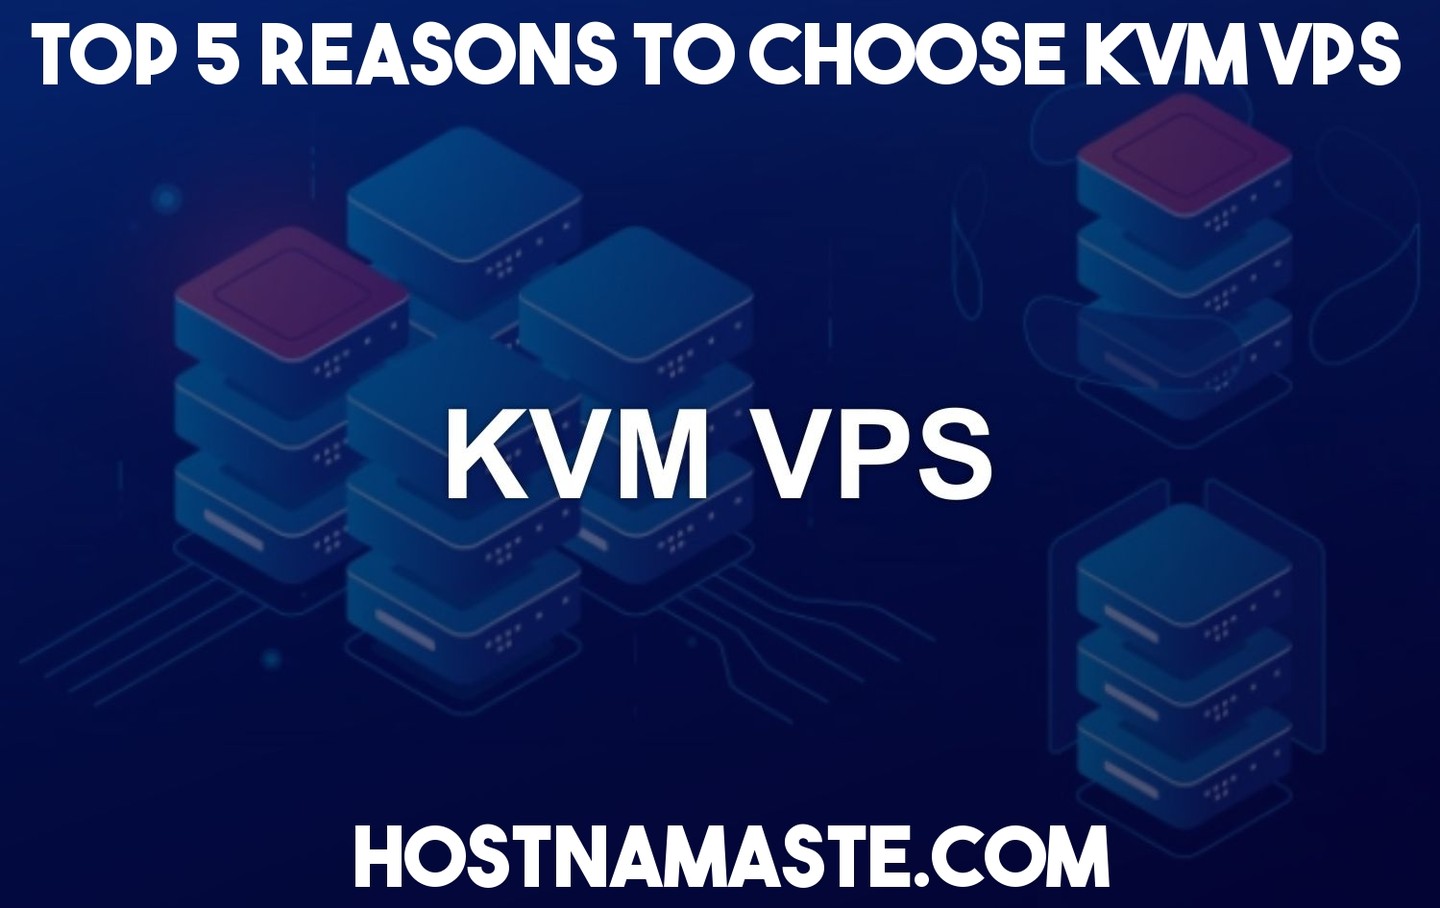 Top 5 Reasons to Choose KVM VPS in 2022
https://www.hostnamaste.com/blog/top-5-reasons-to-choose-kvm-vps/

#KVMVPS #KVM #VPS #KernelBasedVirtualMachine #KVMVPSHosting #KVMServer #HostNamaste #VirtualPrivateServer #Top5ReasonsToChooseKVMVPS 
#VPSHosting #BudgetKVMVPS #AffordableKVMVPS #LinuxKVMVPS #WindowsKVMVPS